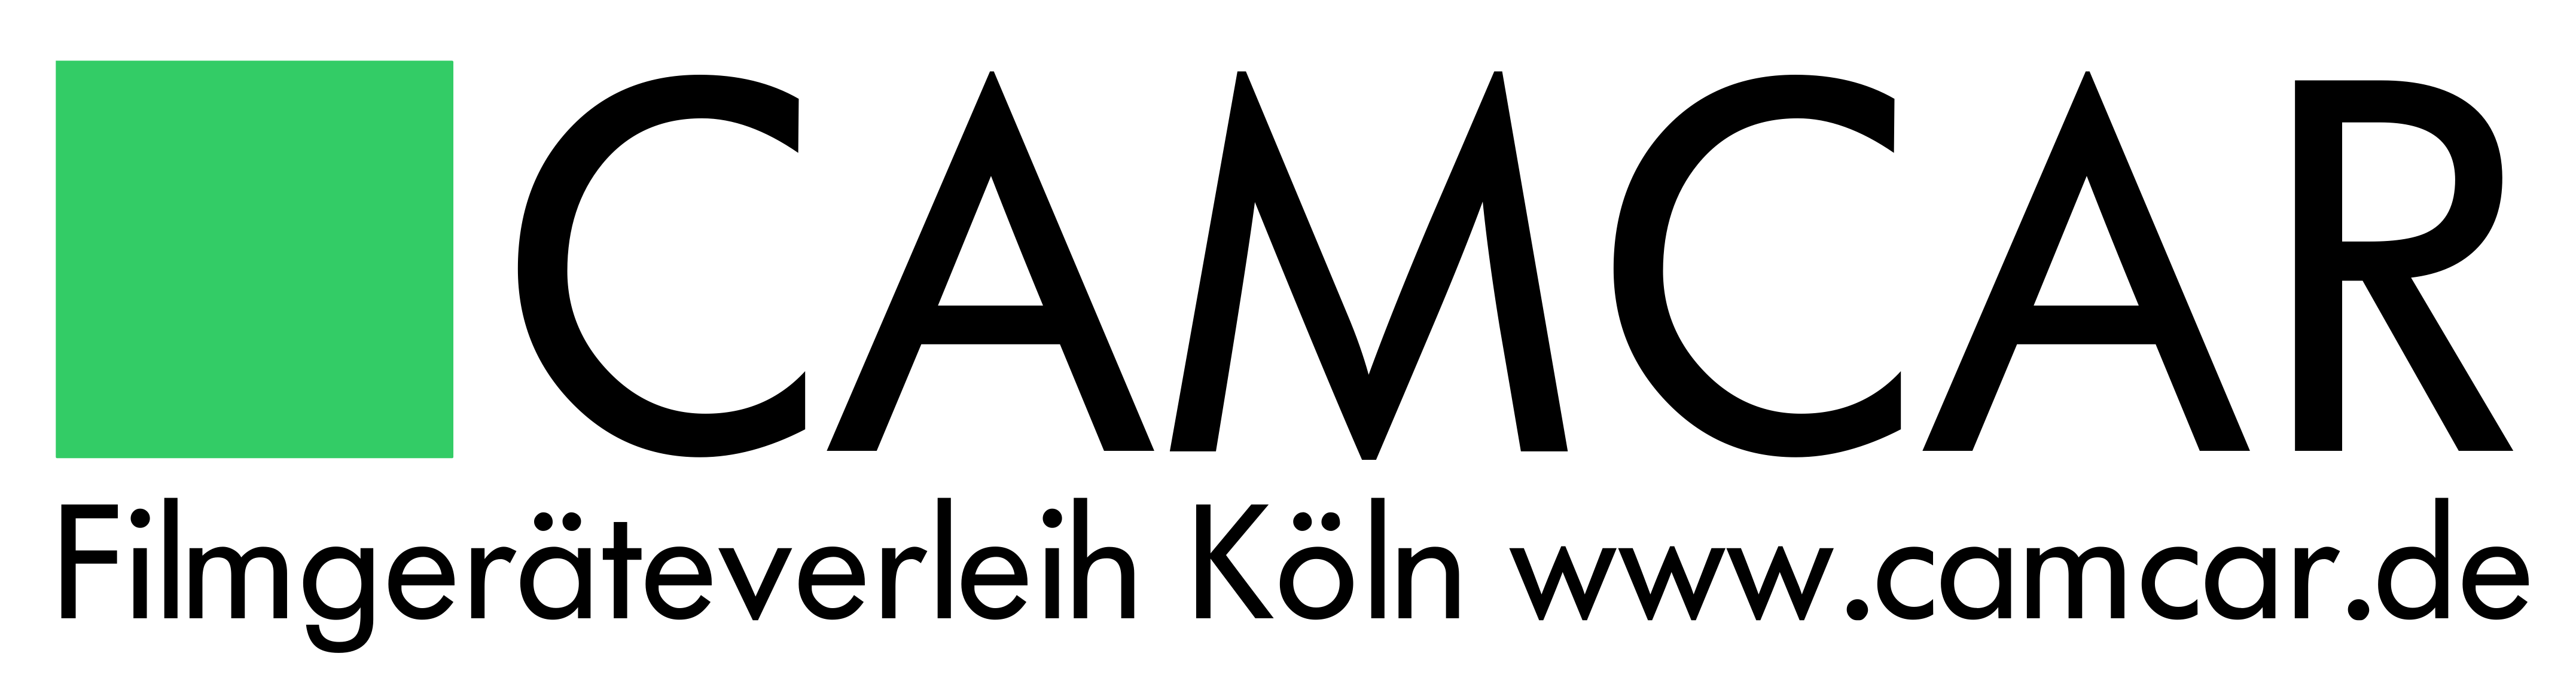 Camcar Filmgeräte-Verleih OHG